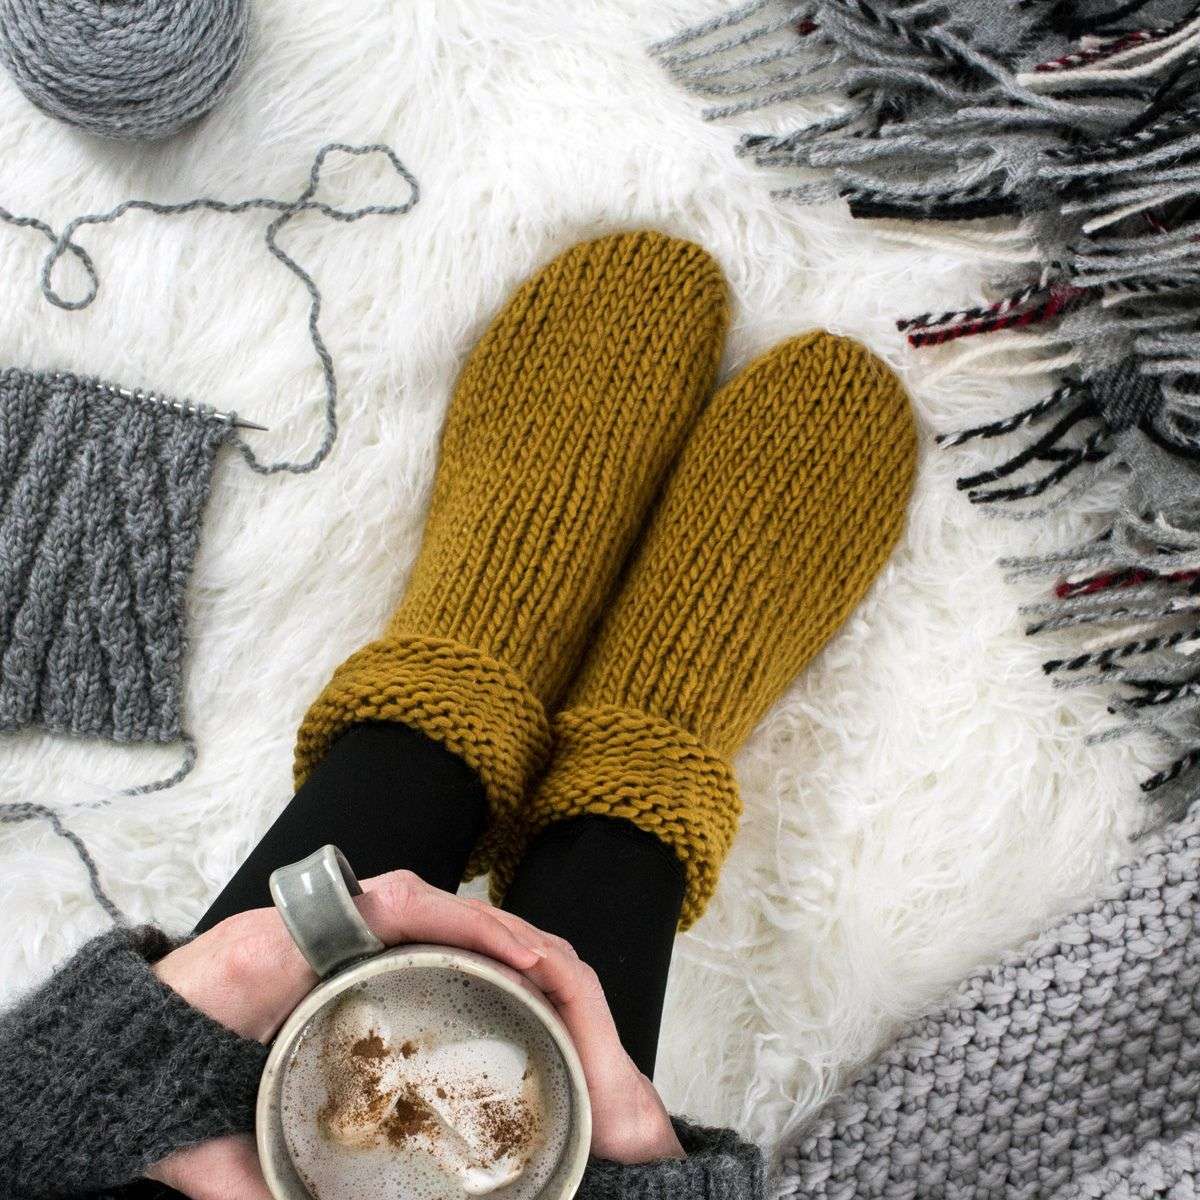 Sock Knitting: About Knitting Sock Cuffs 